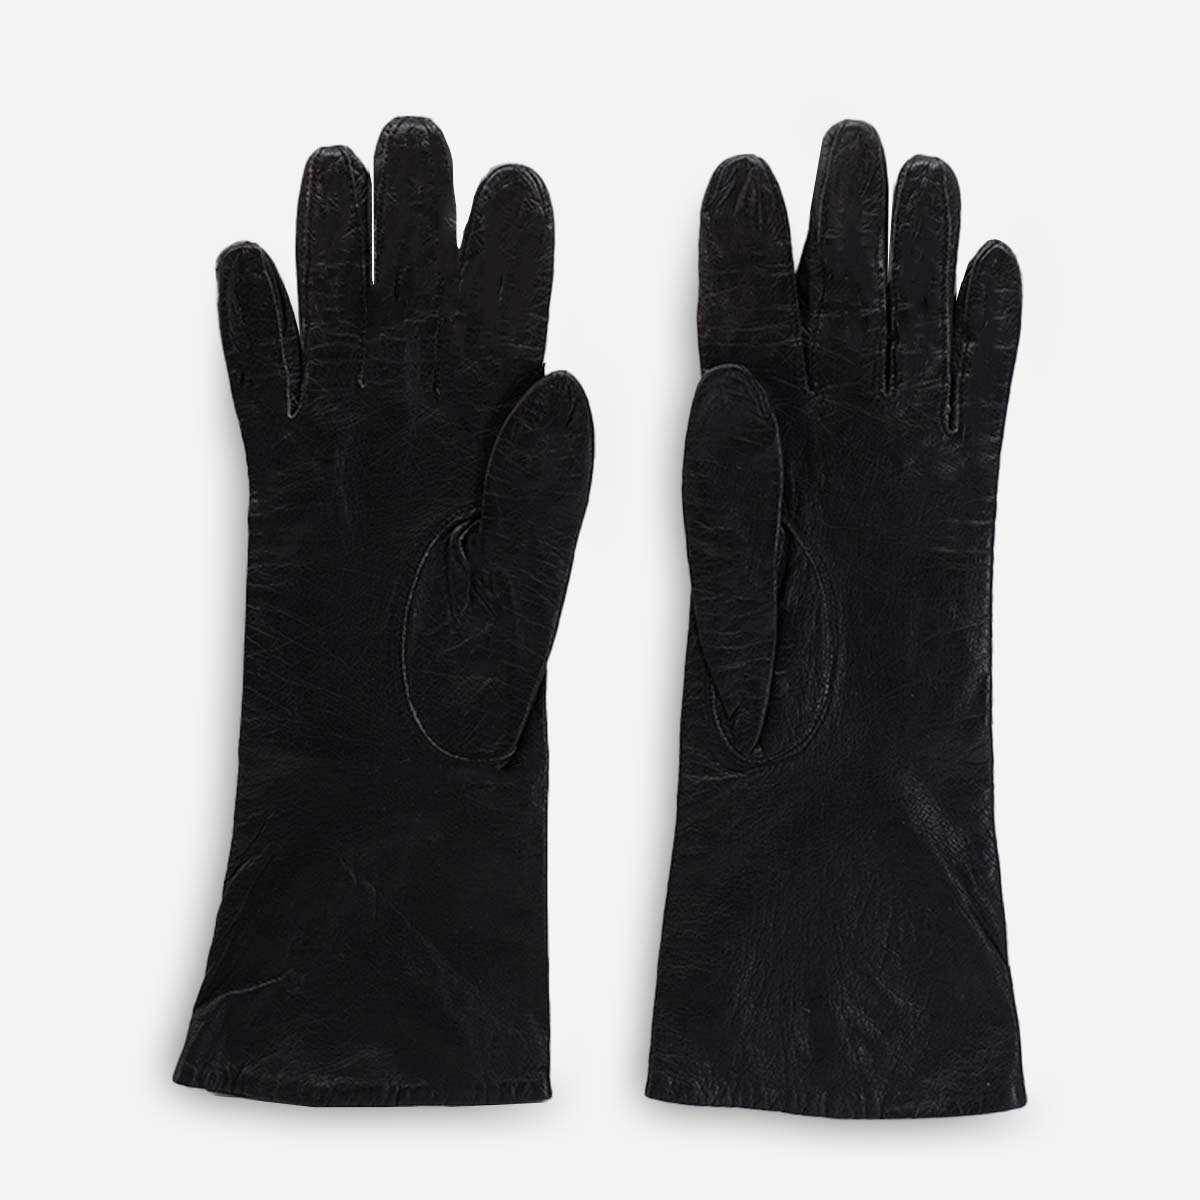 1950s women's black winter gloves